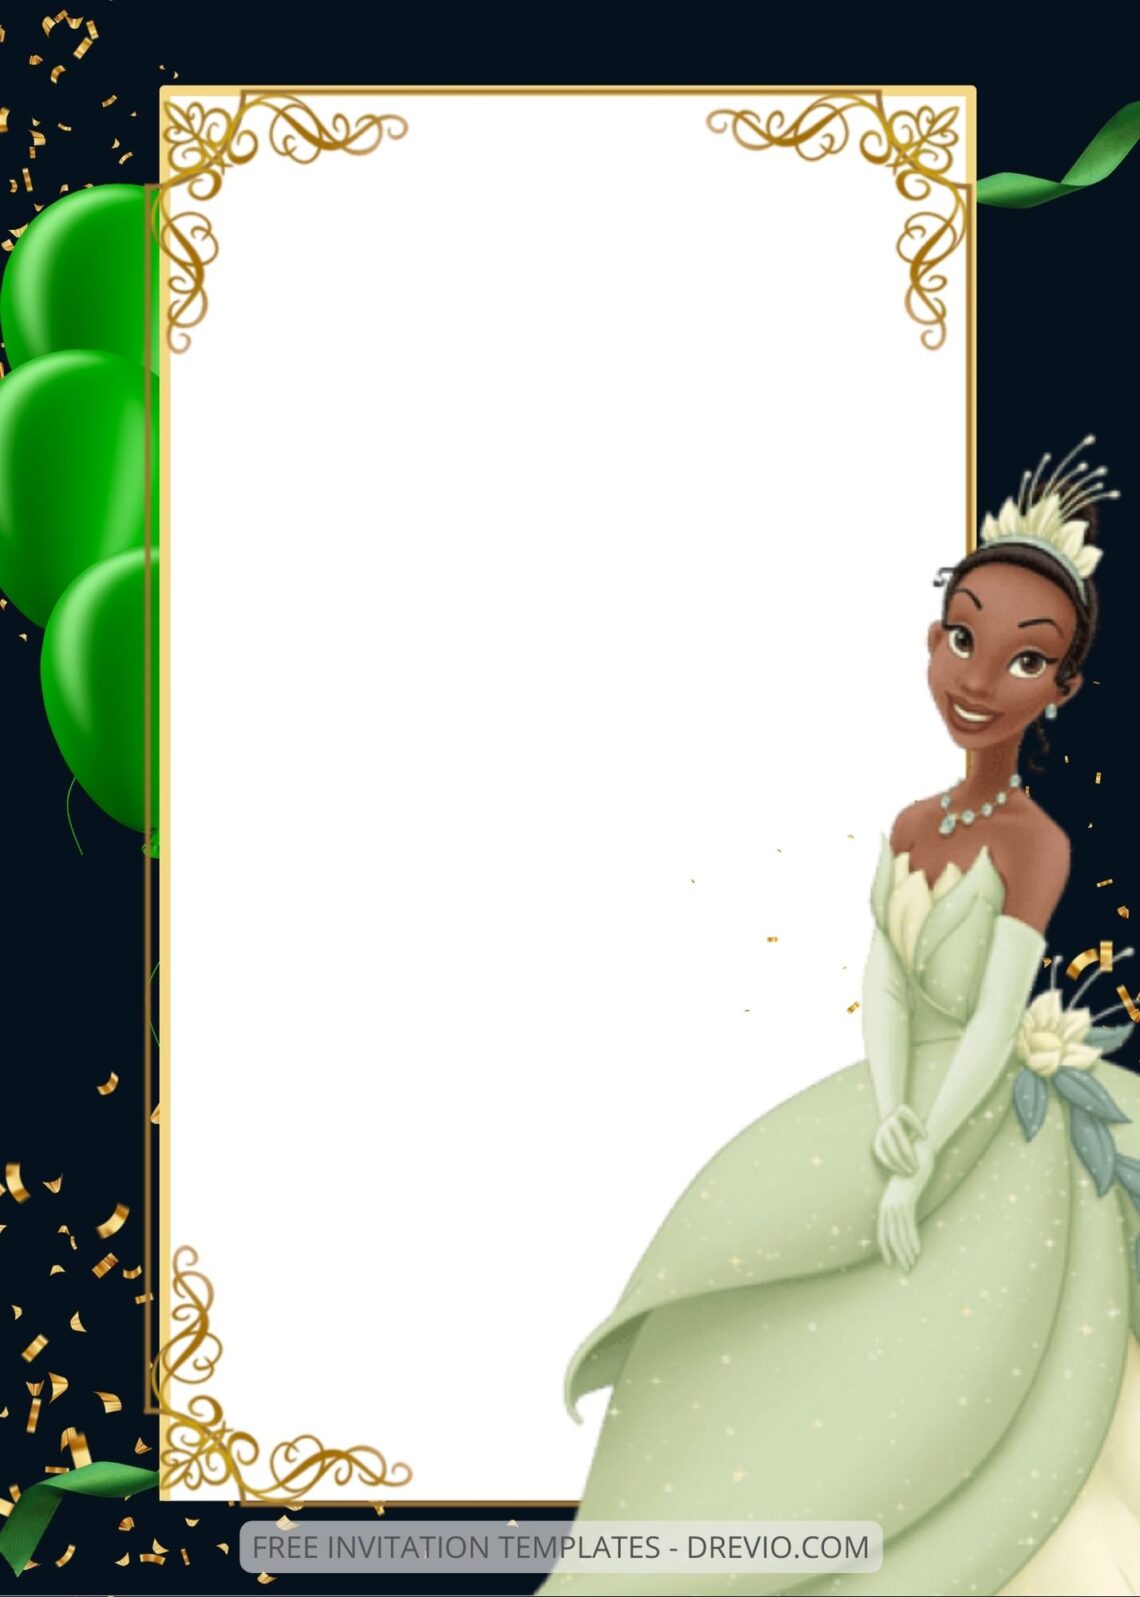 FREE EDITABLE - 9+ Princess Tiana Canva Birthday Invitation Templates Three